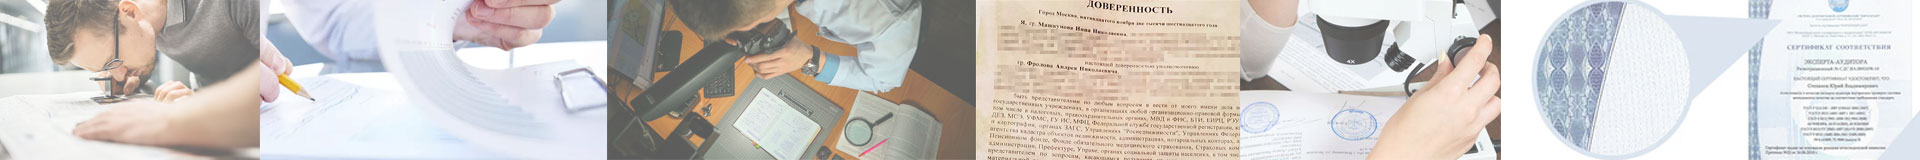 Экспертиза давности изготовления документов. Техническая экспертиза документов Барнауле